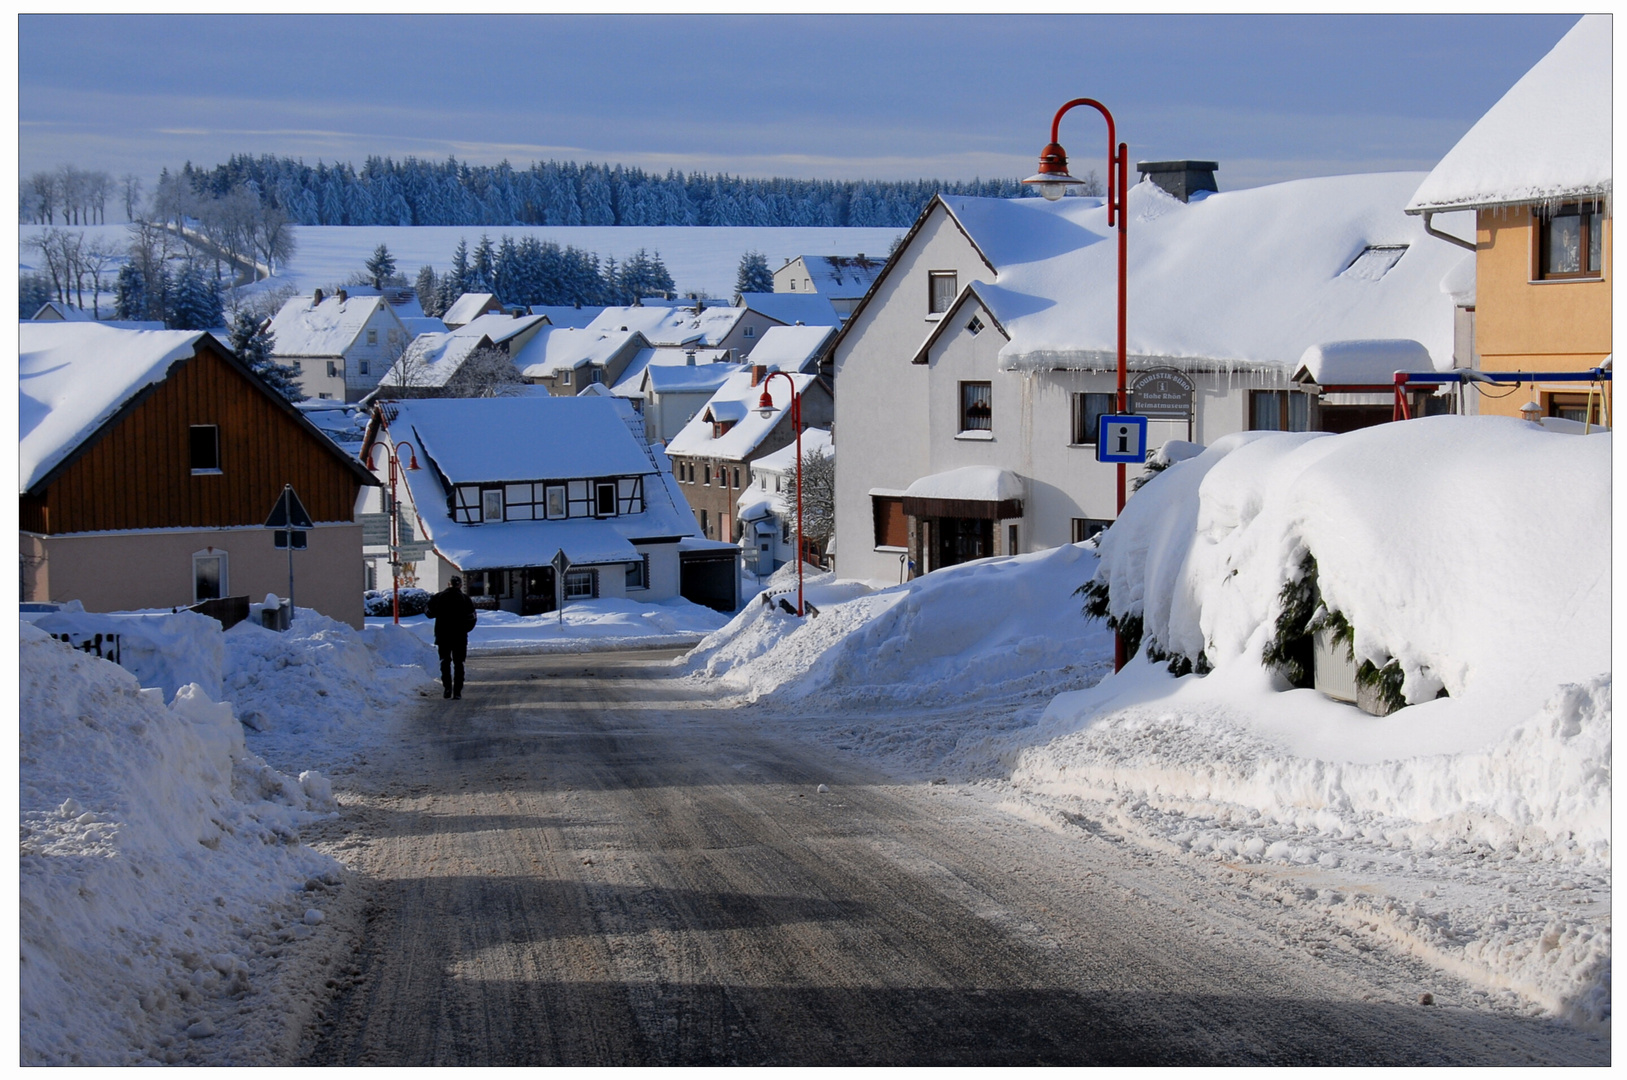 Invierno en el pueblo (Winter im Dorf)